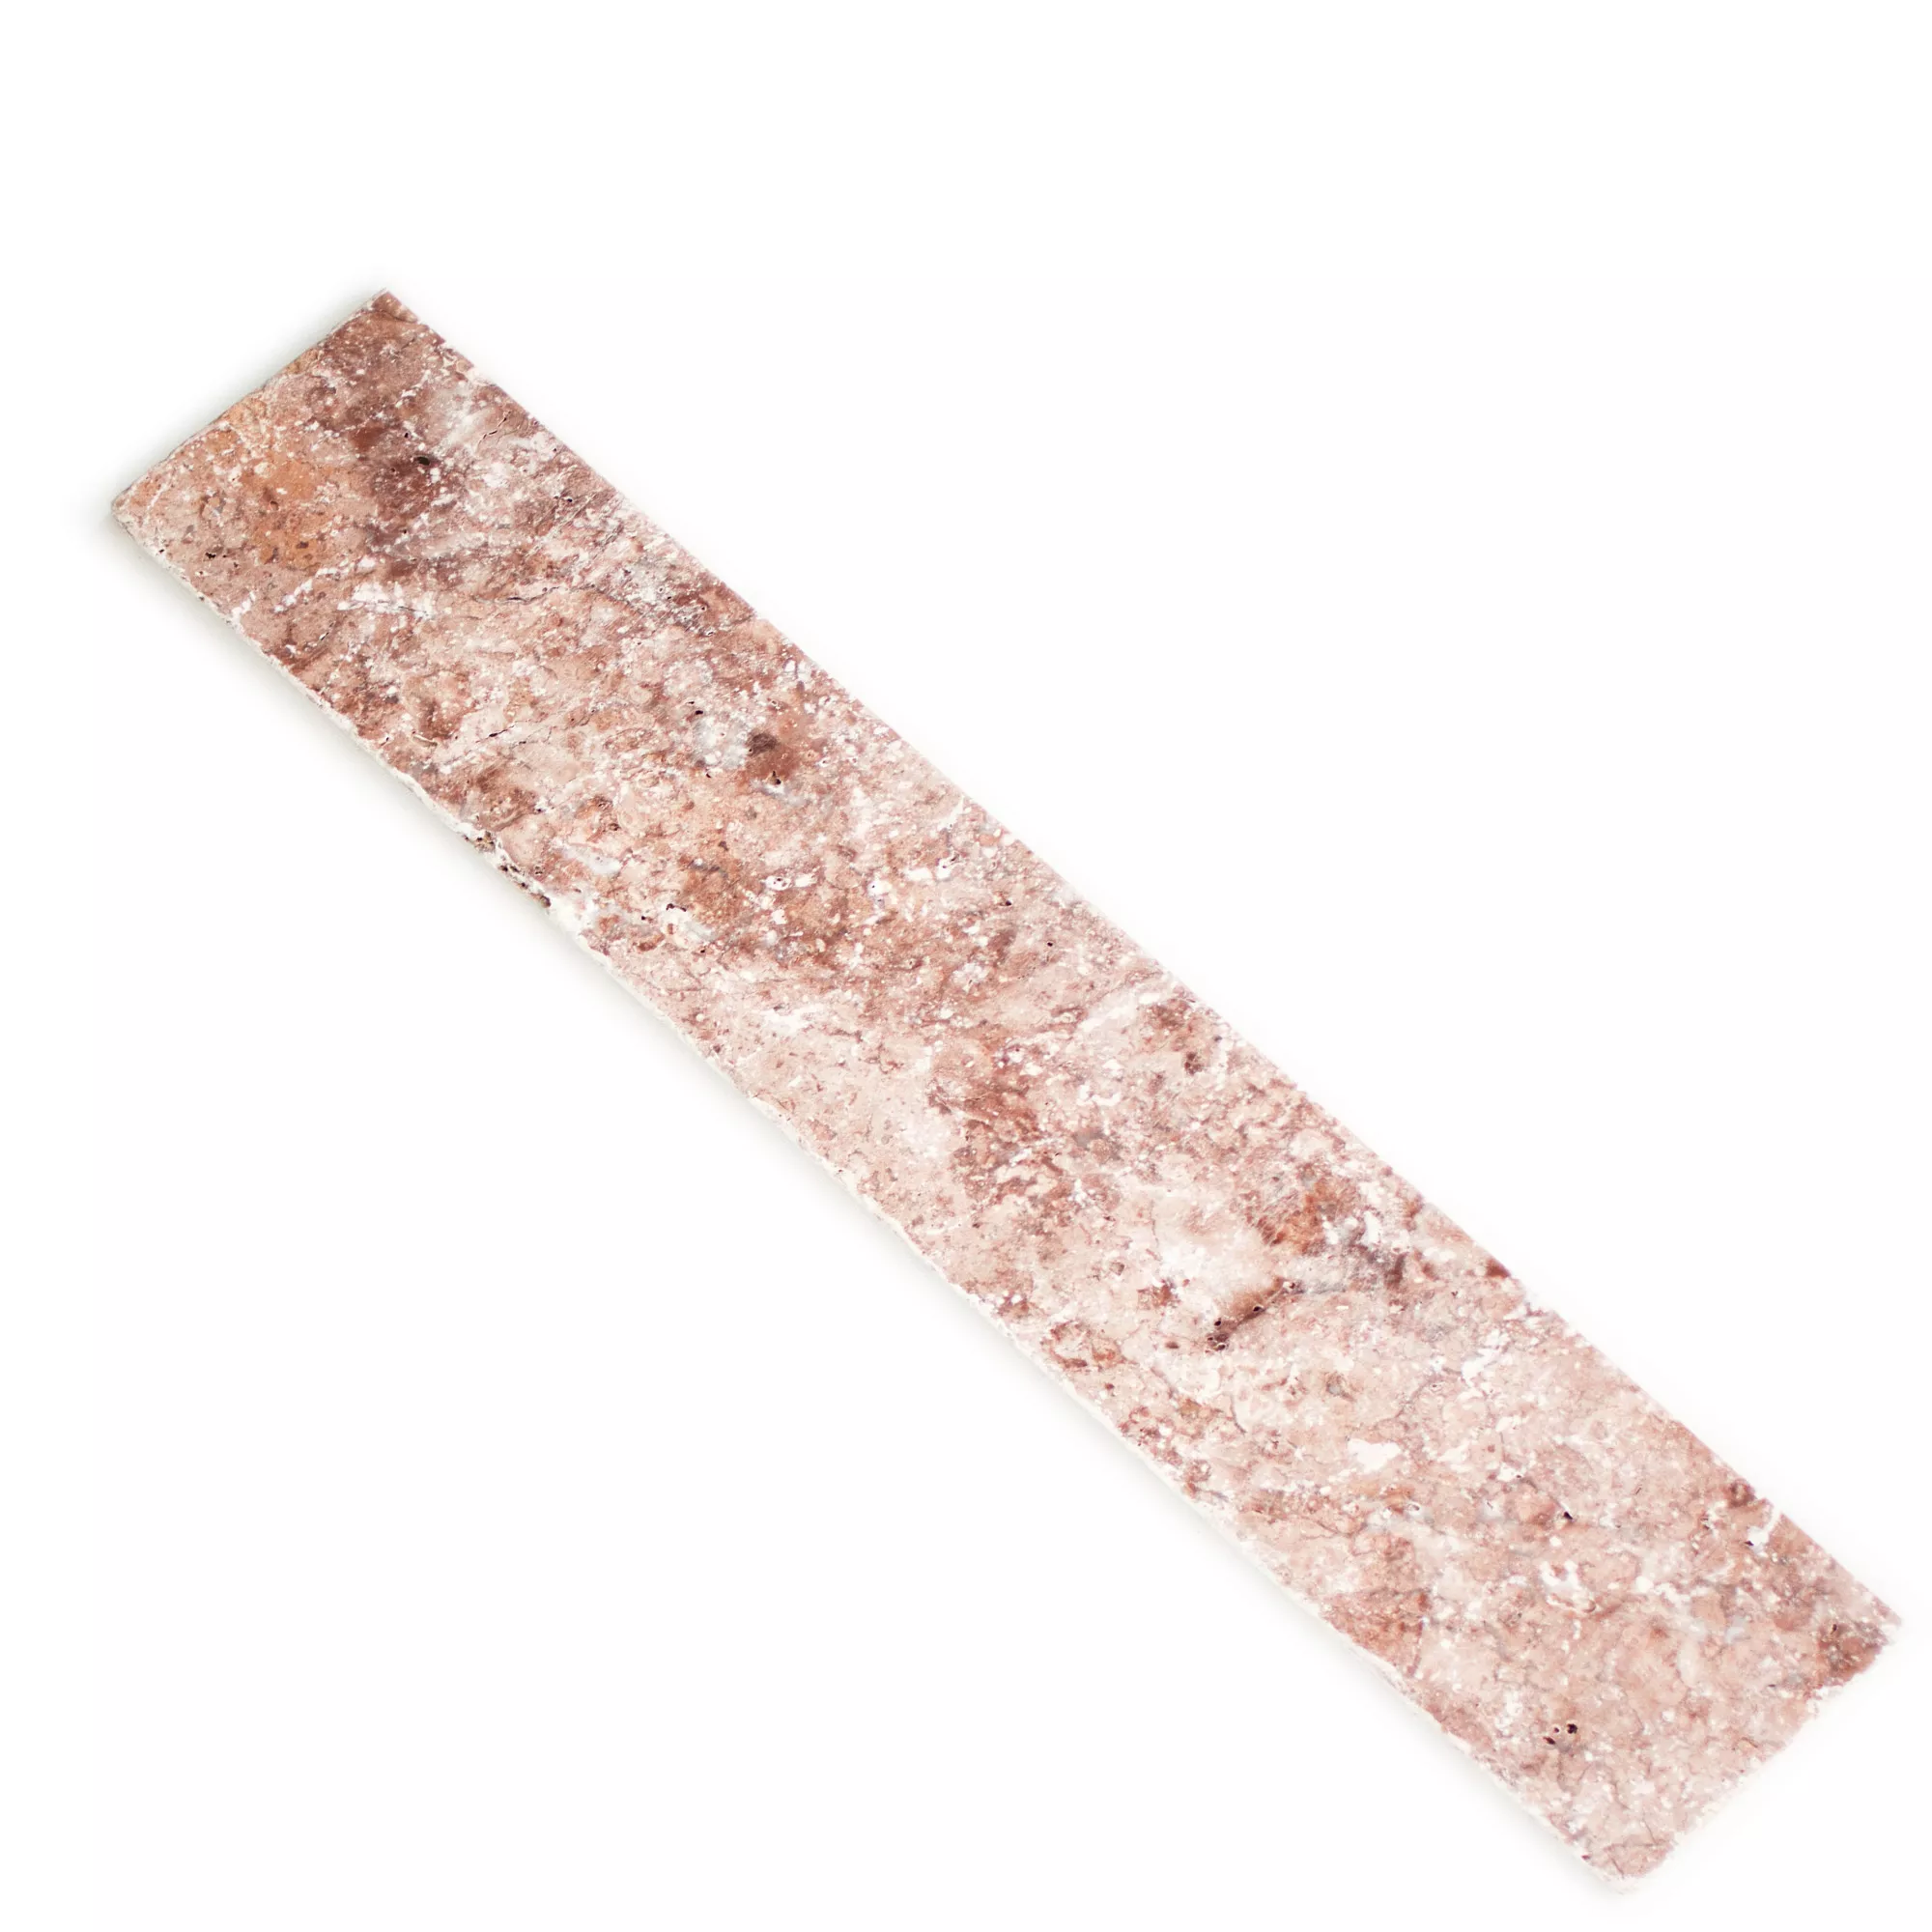 Σοβατεπί Ασβεστόλιθος Πλακάκια Aπό Φυσική Πέτρα Usantos Rosso